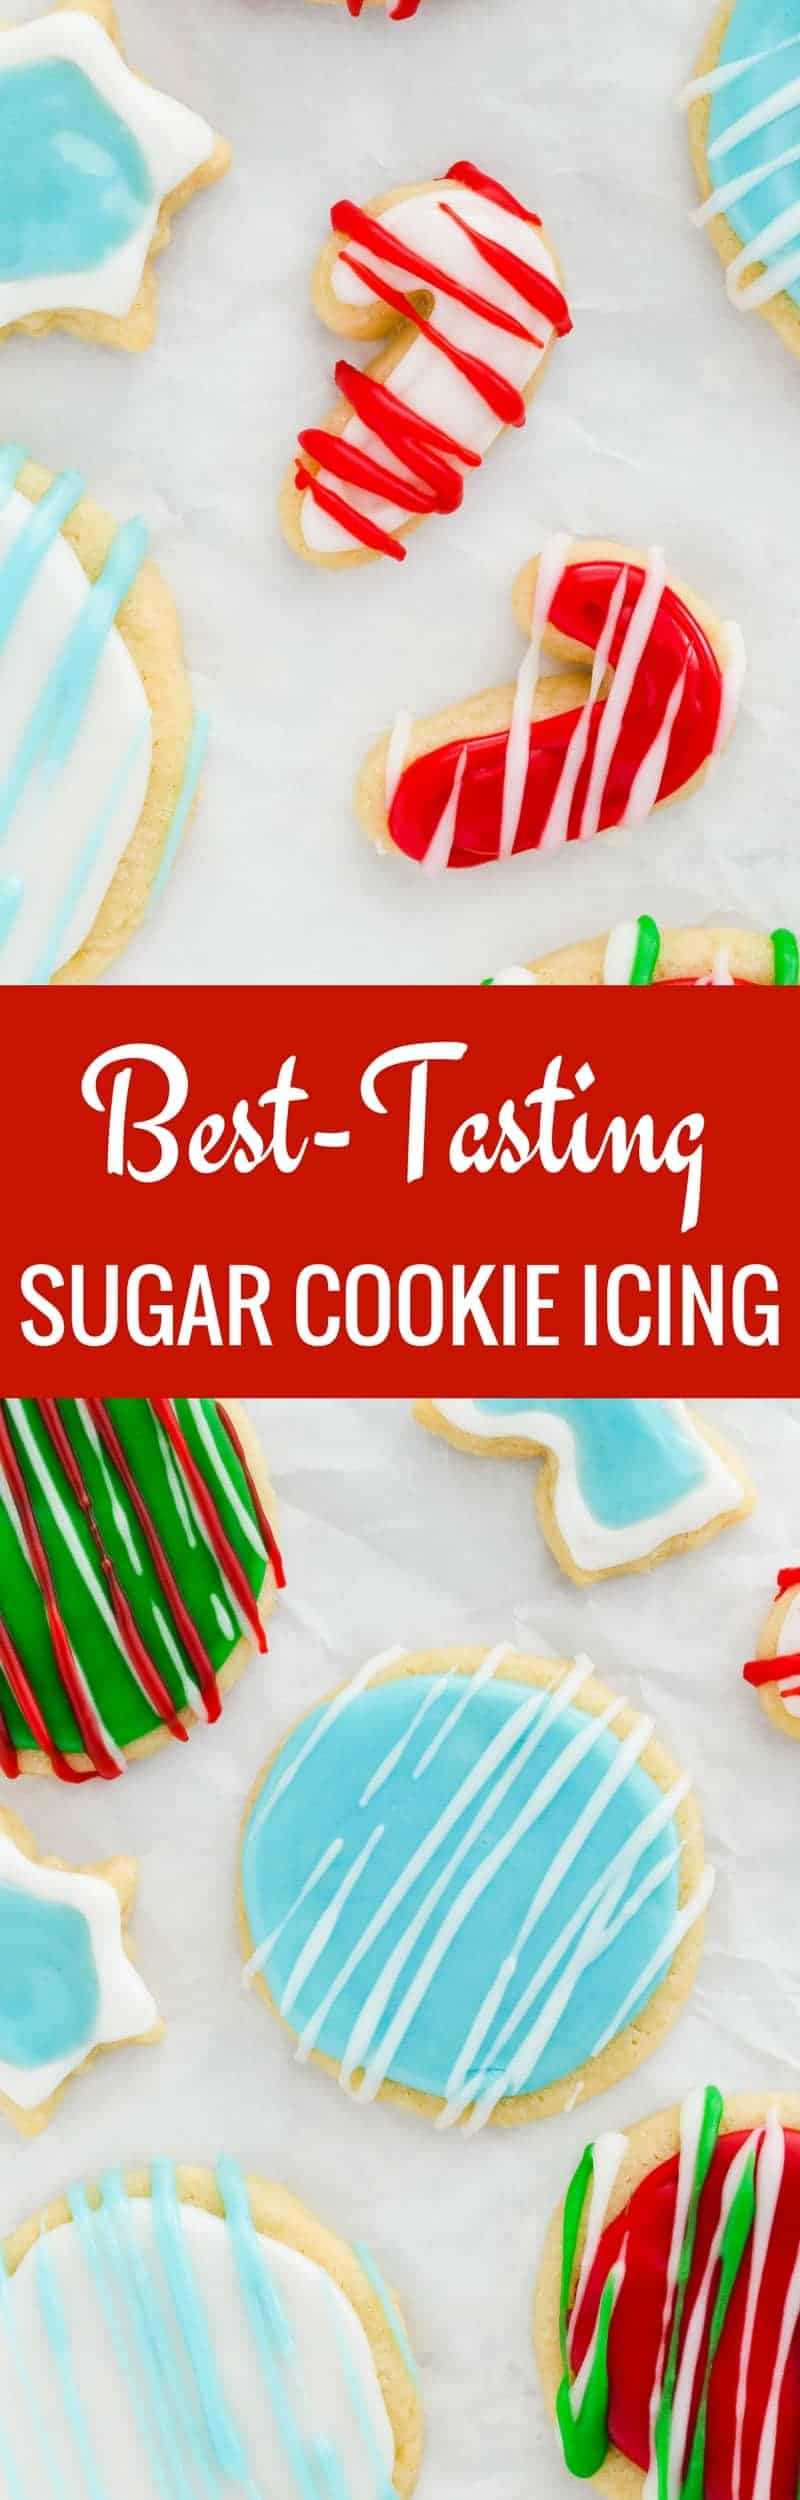 Best Tasting Christmas Cookies
 Best Tasting Sugar Cookie Icing Recipe